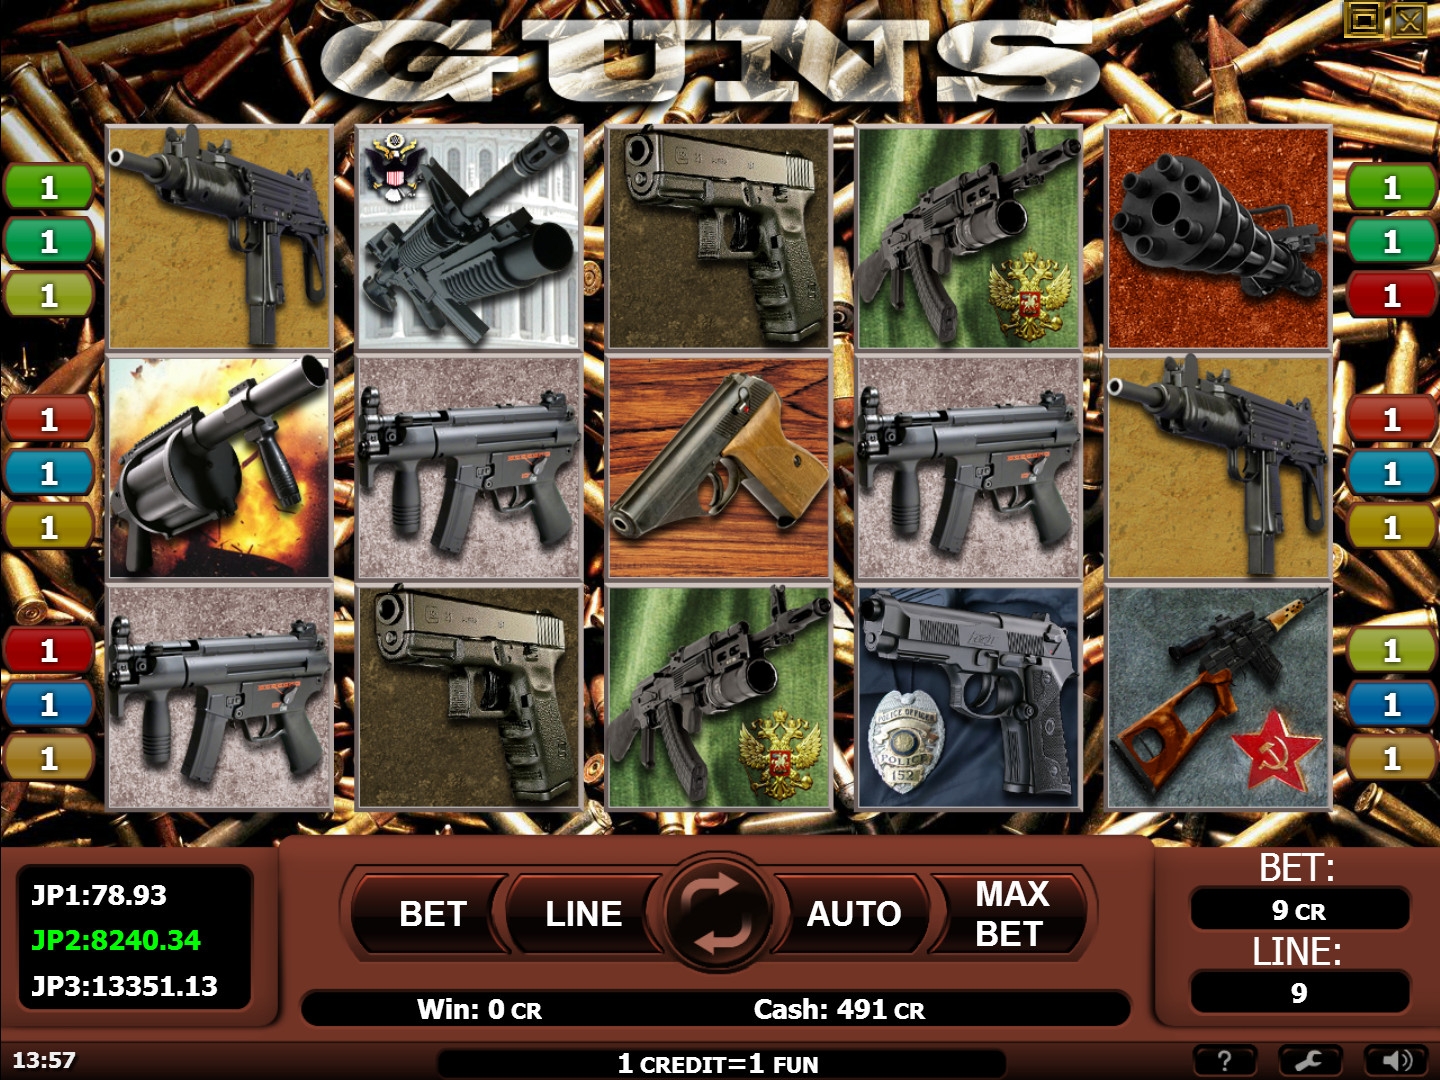 Guns (Guns) from category Slots